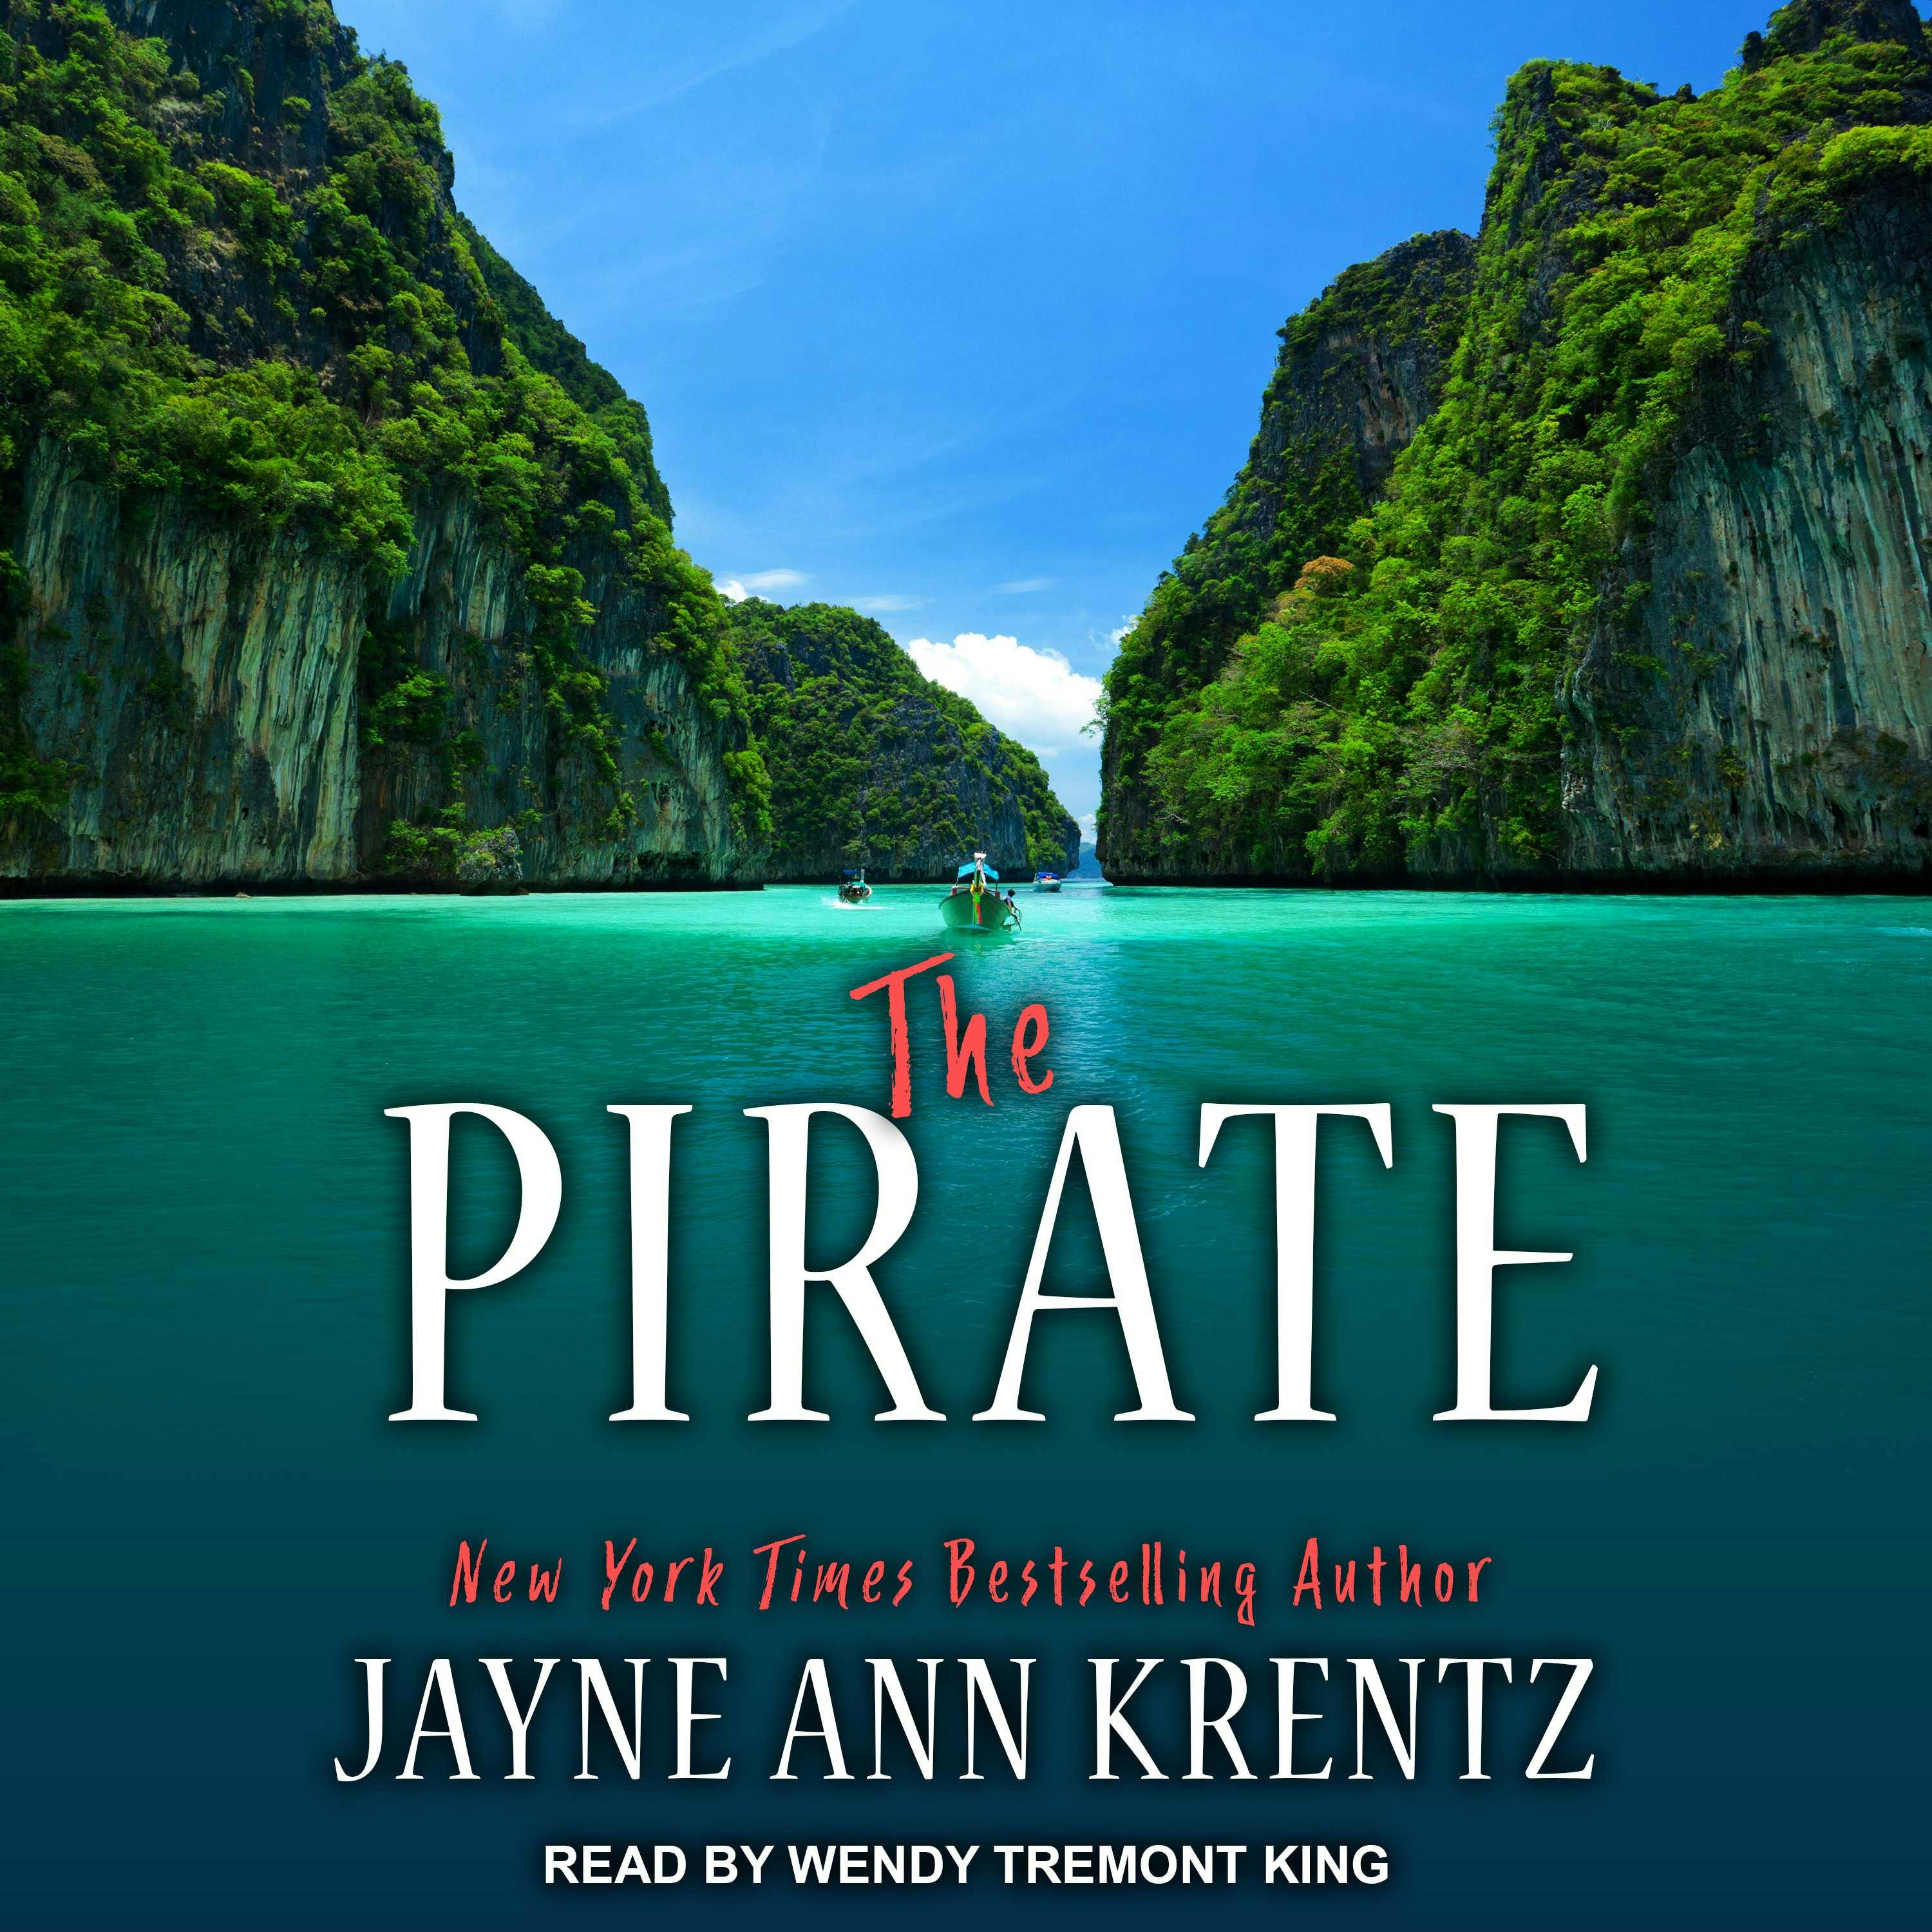 The Pirate - Jayne Ann Krentz